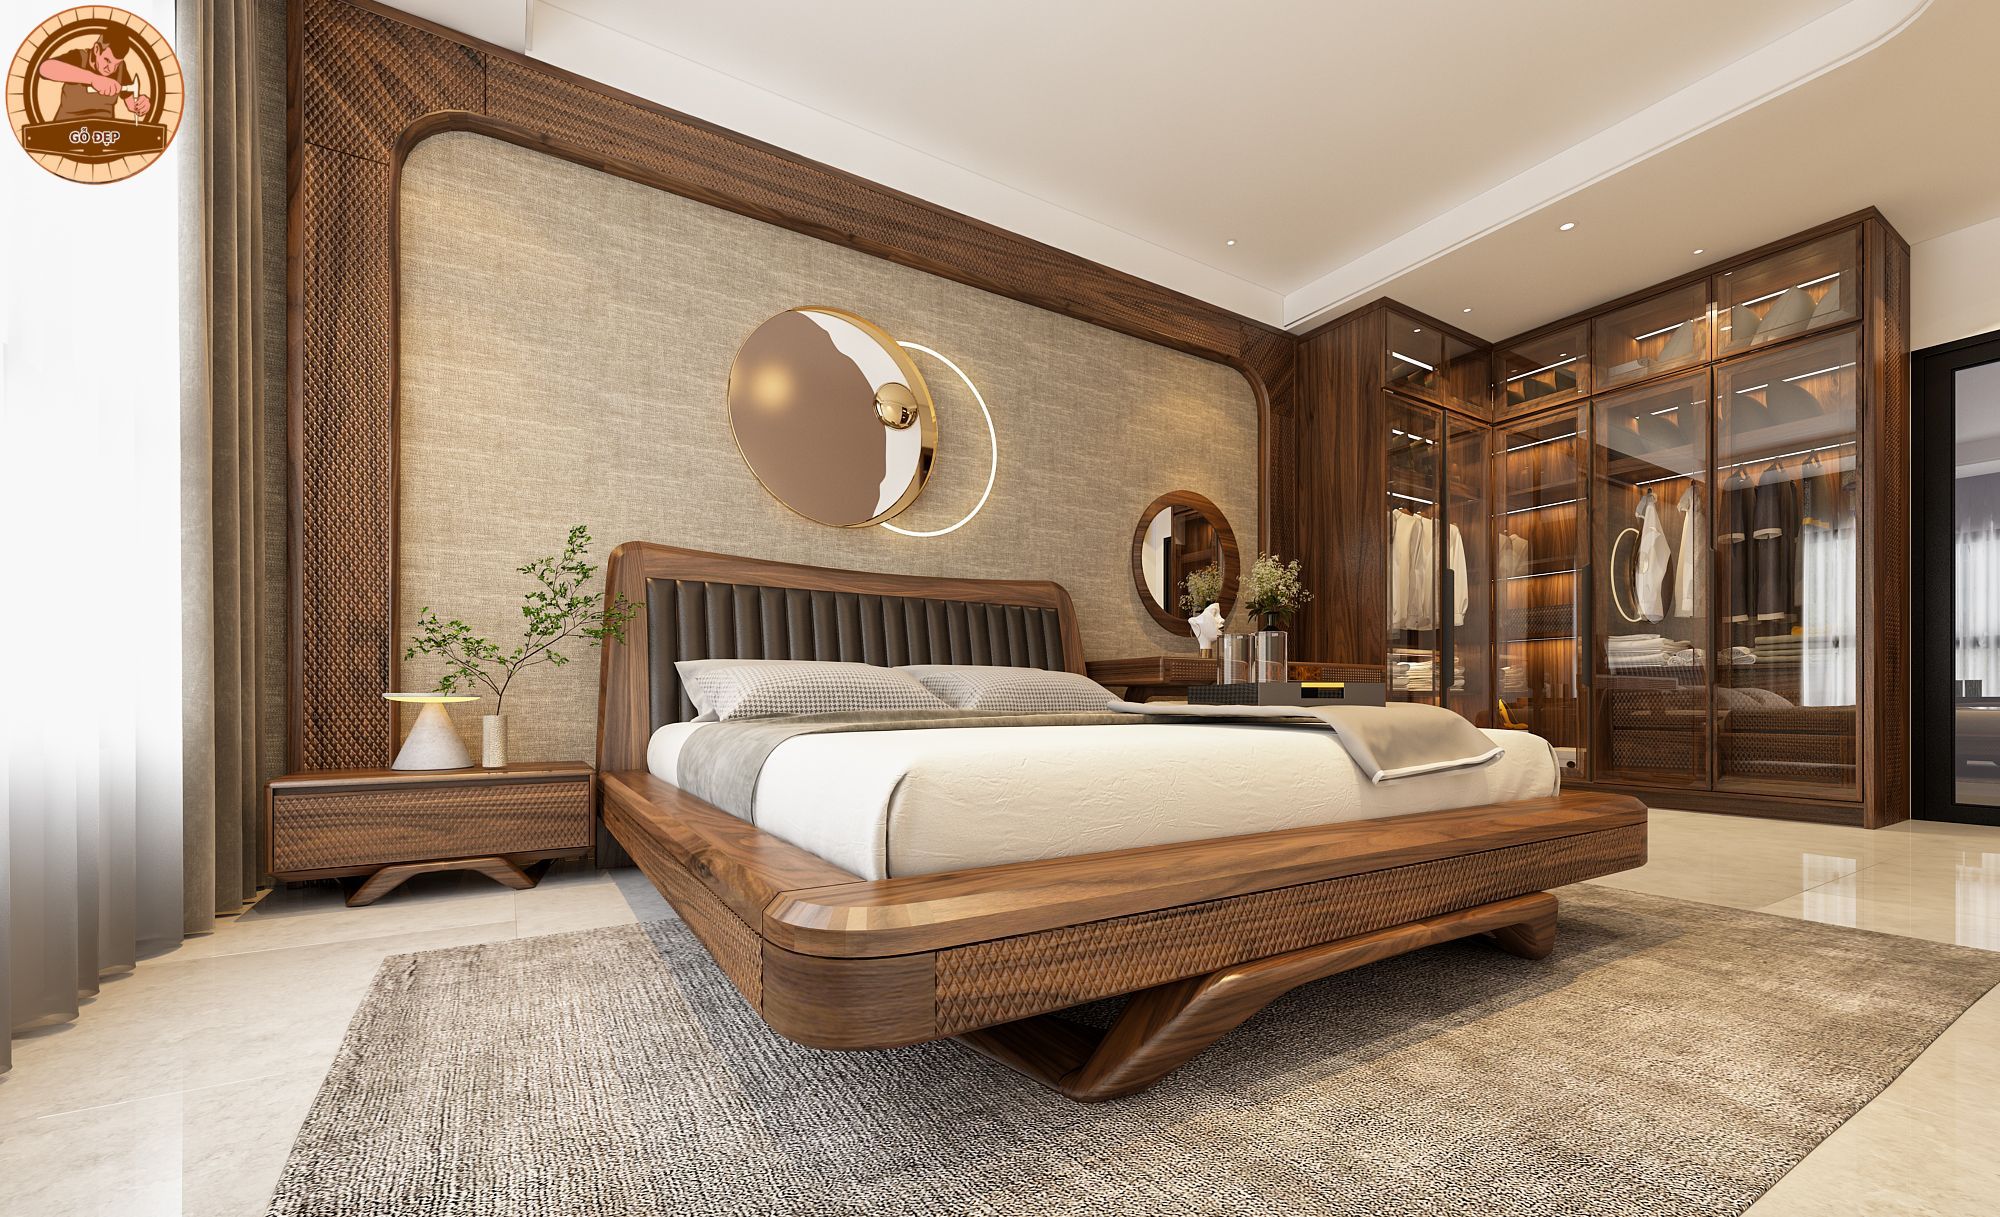 Giường ngủ gỗ óc chó được thiết kế theo phong cách hiện đại